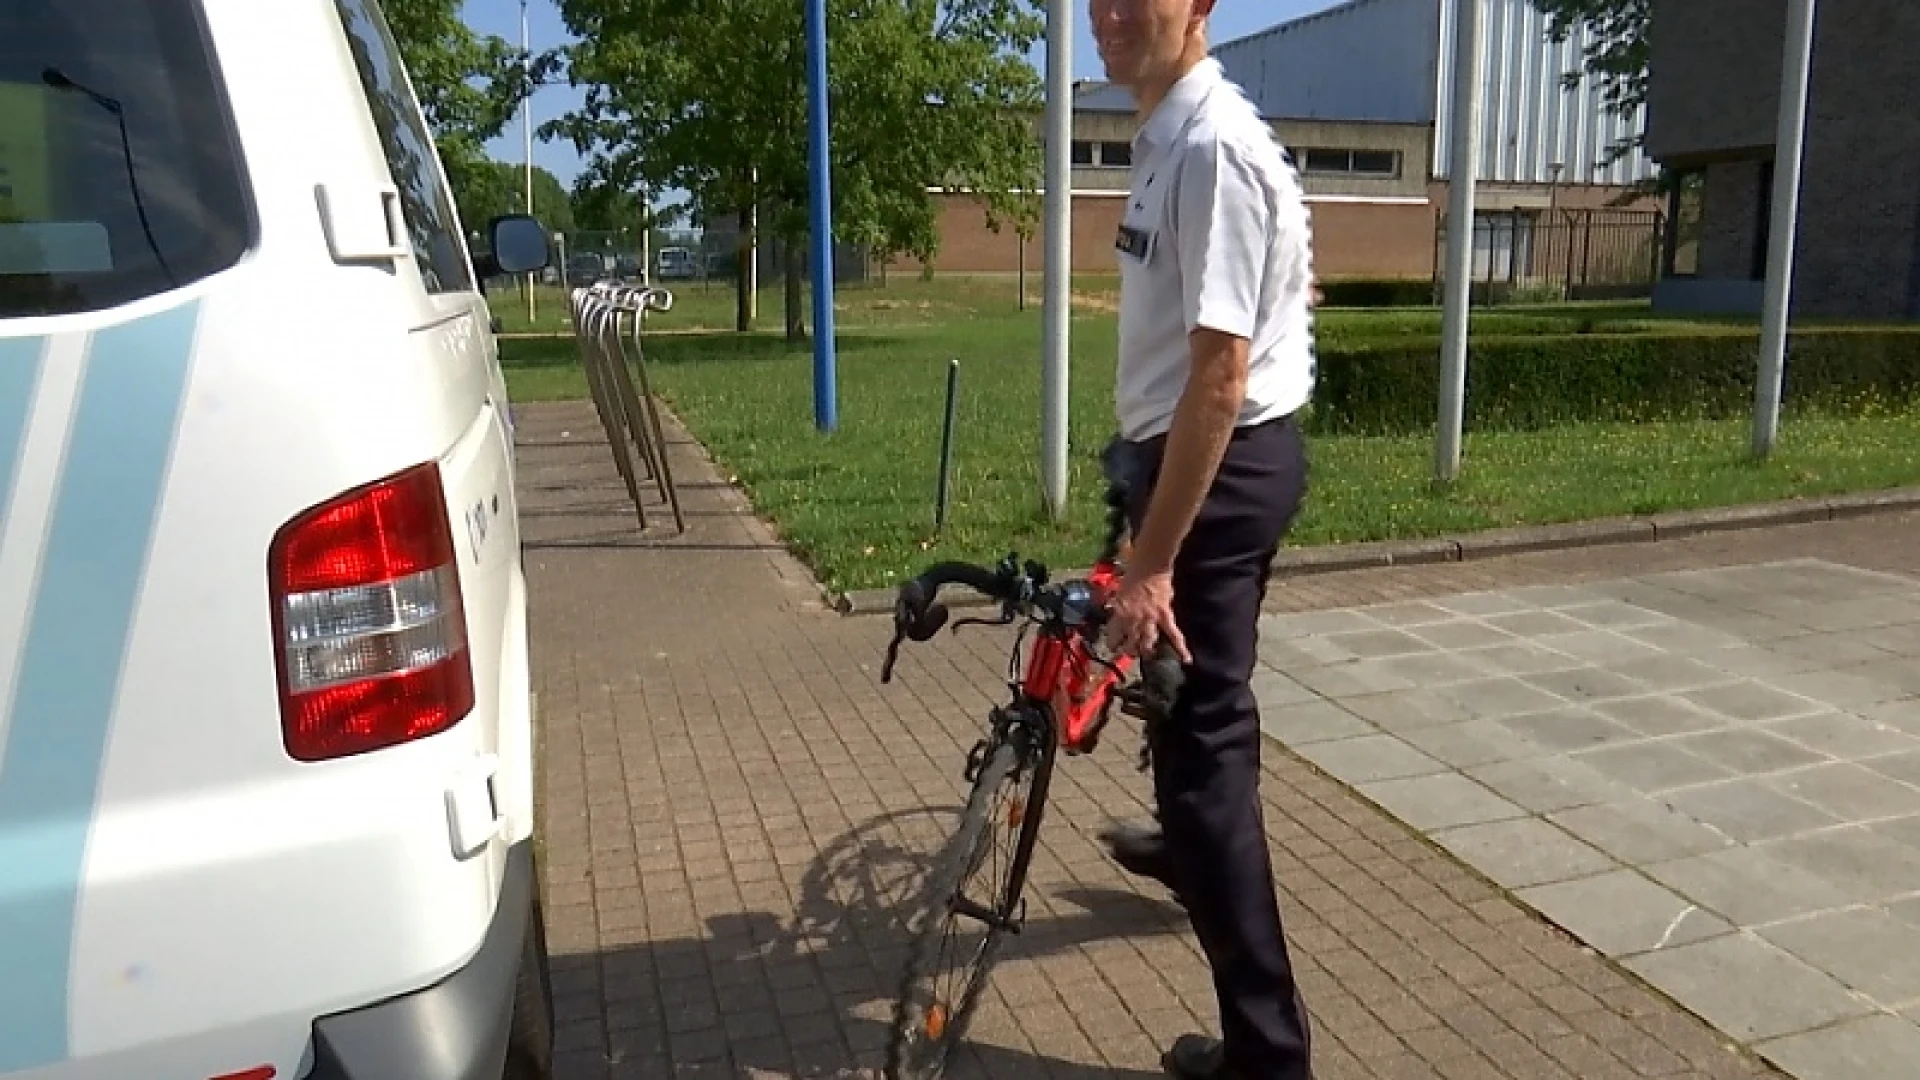 Amper 1 procent van gevonden fietsen in Aarschot wordt opgehaald